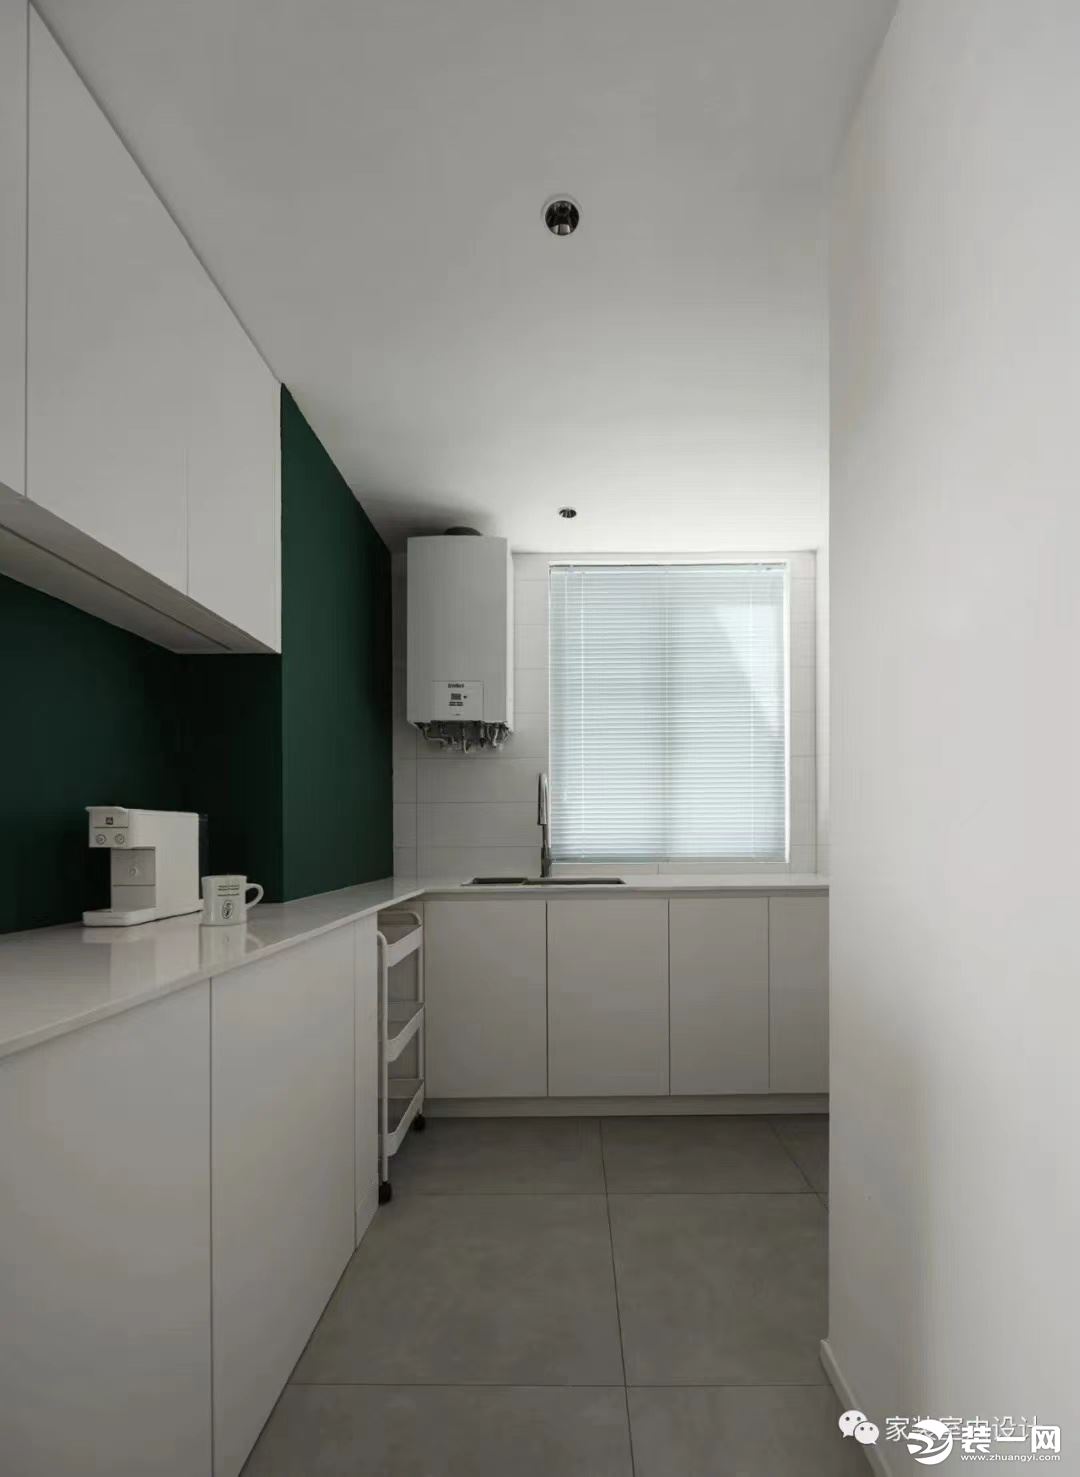 开放式厨房用瓷砖和墨绿色乳胶漆进行烹饪区和操作区的分割，通体白色的柜体弱化了墙体的拥堵感，让空间显得